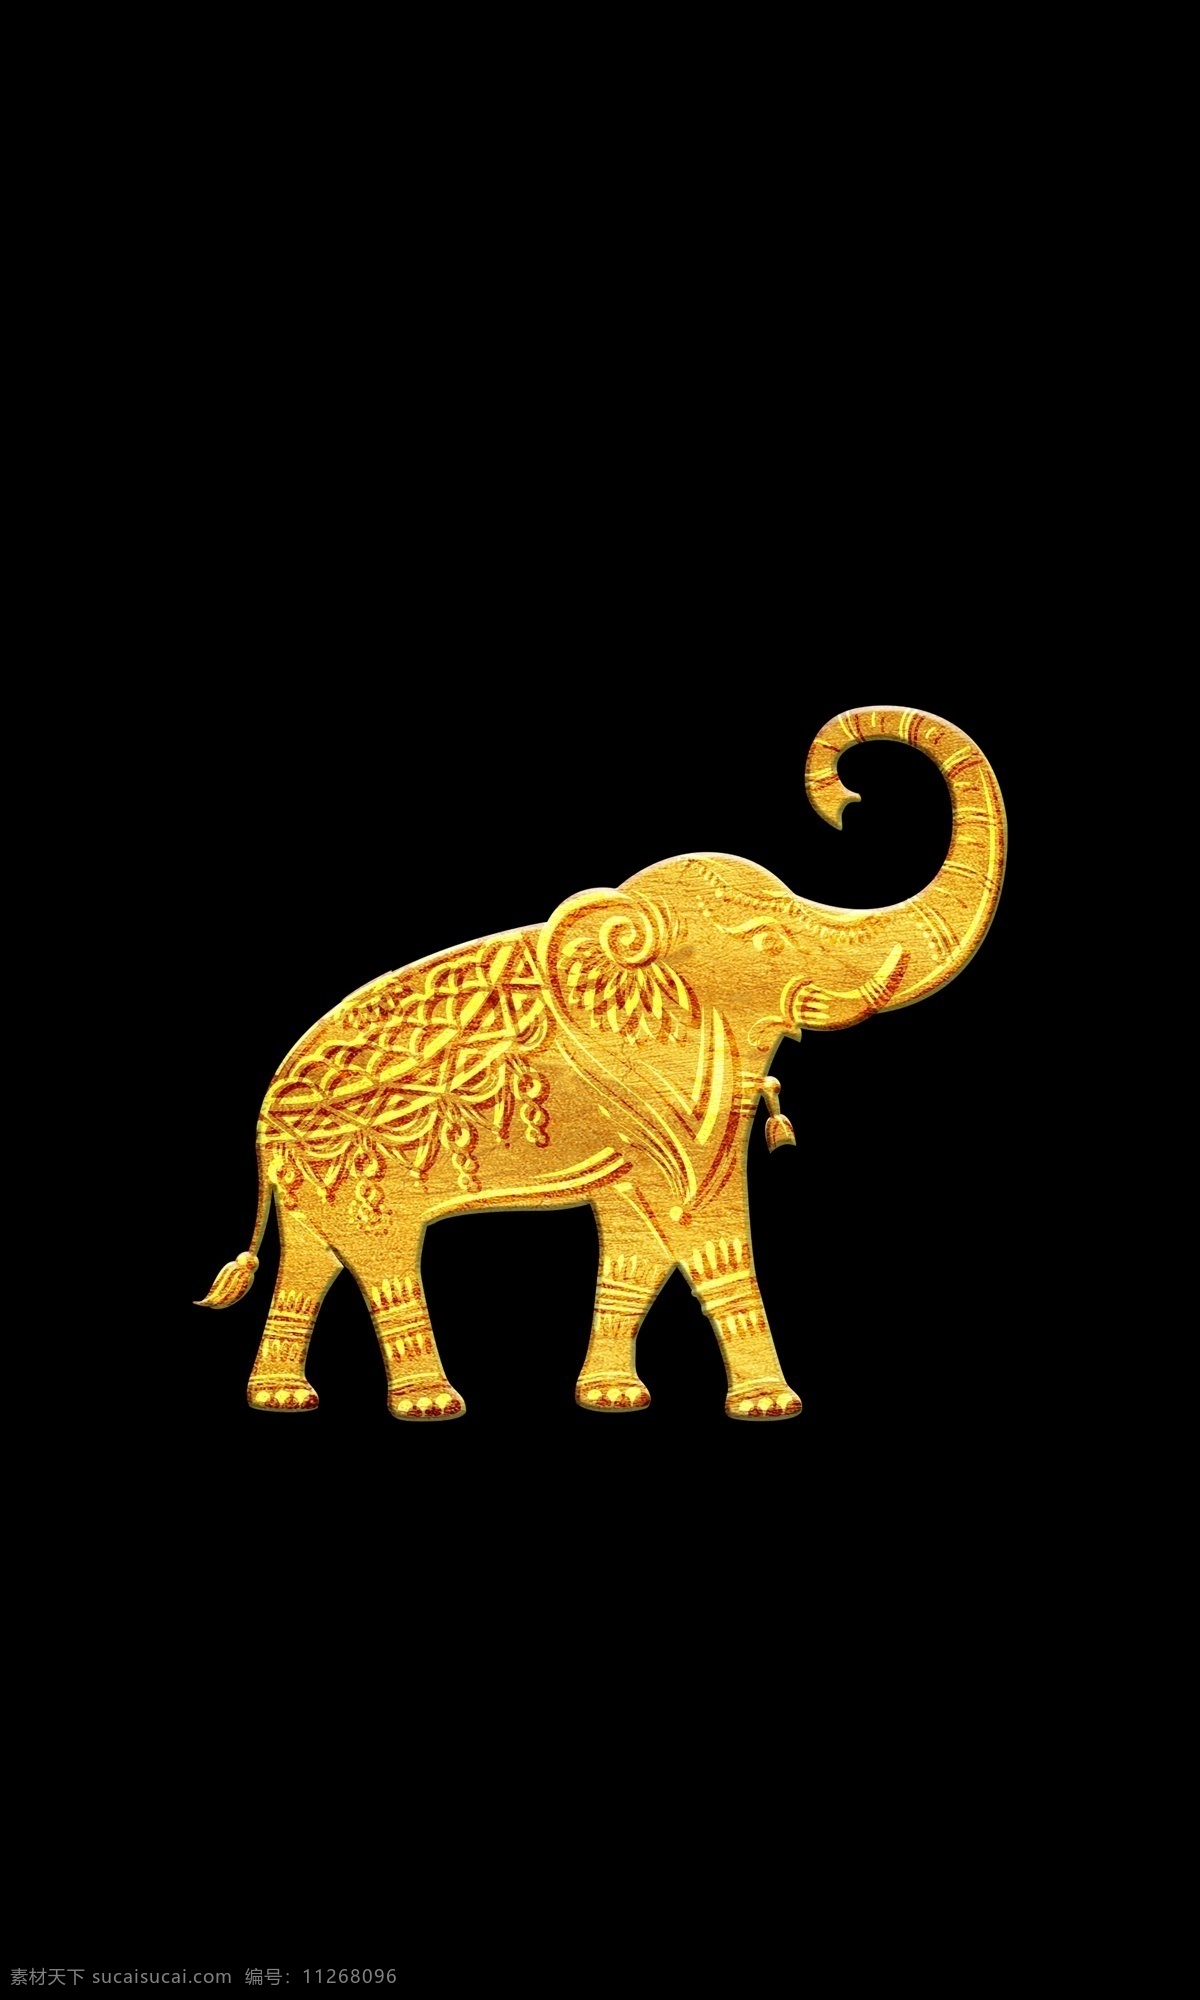 金色大象 大象 大象素材 泰国 3d大象 立体 3d 浮雕大象 浮雕素材 浮雕 分层